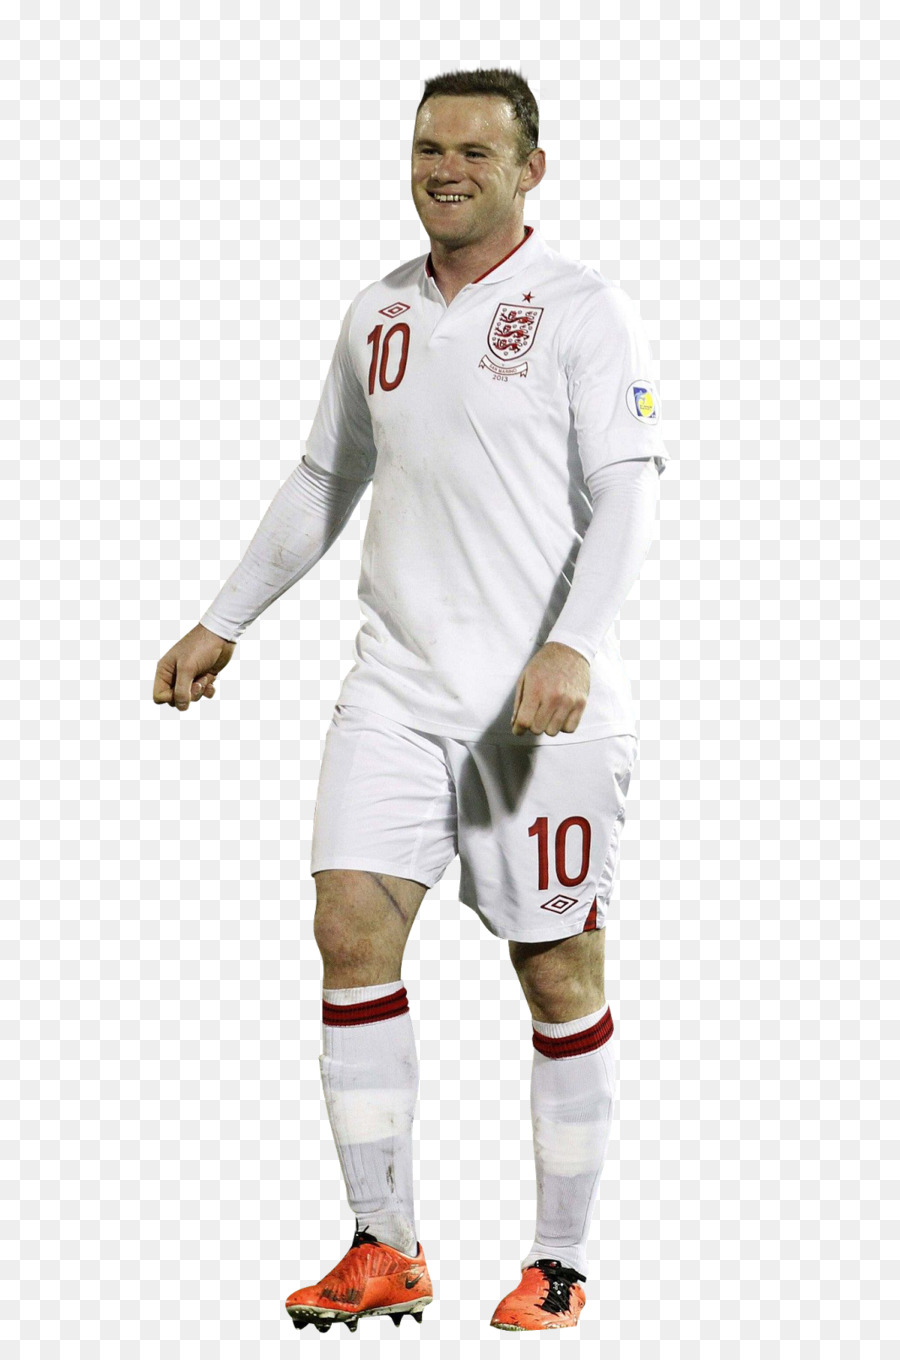 T shirt Đội áo Khoác thể thao ユニフォーム - Wayne Rooney